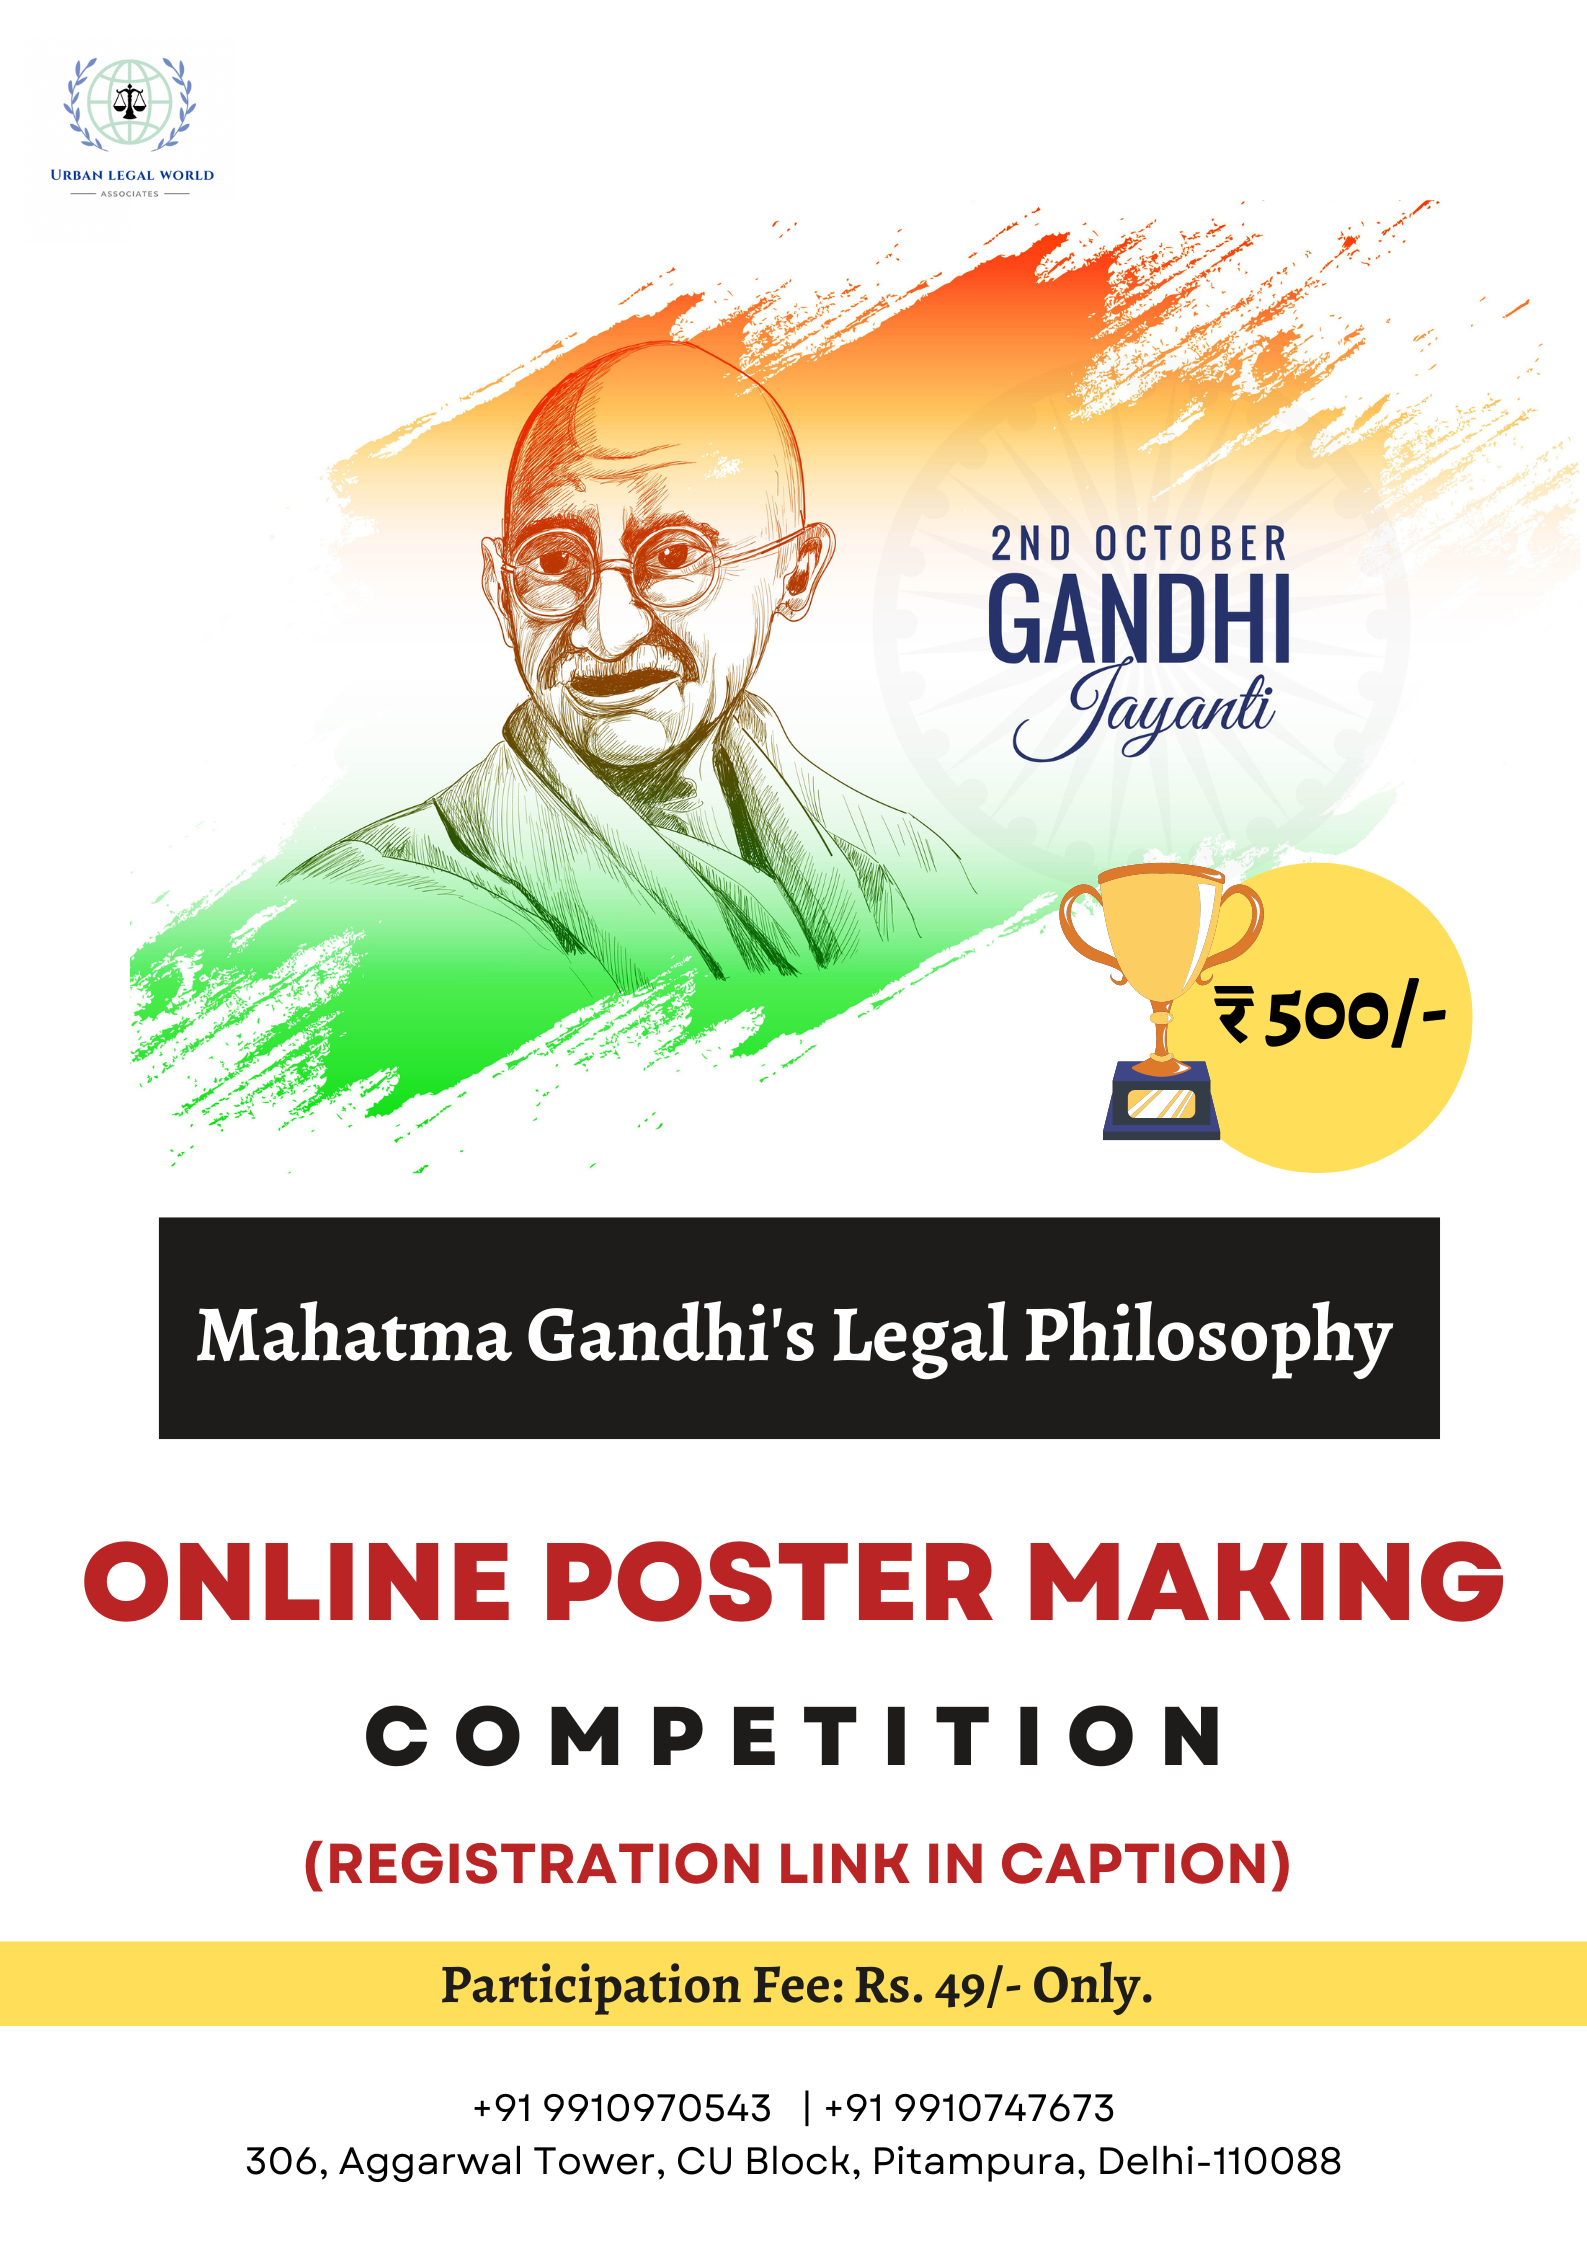 Gandhi Jayanti: Poster Making Competition